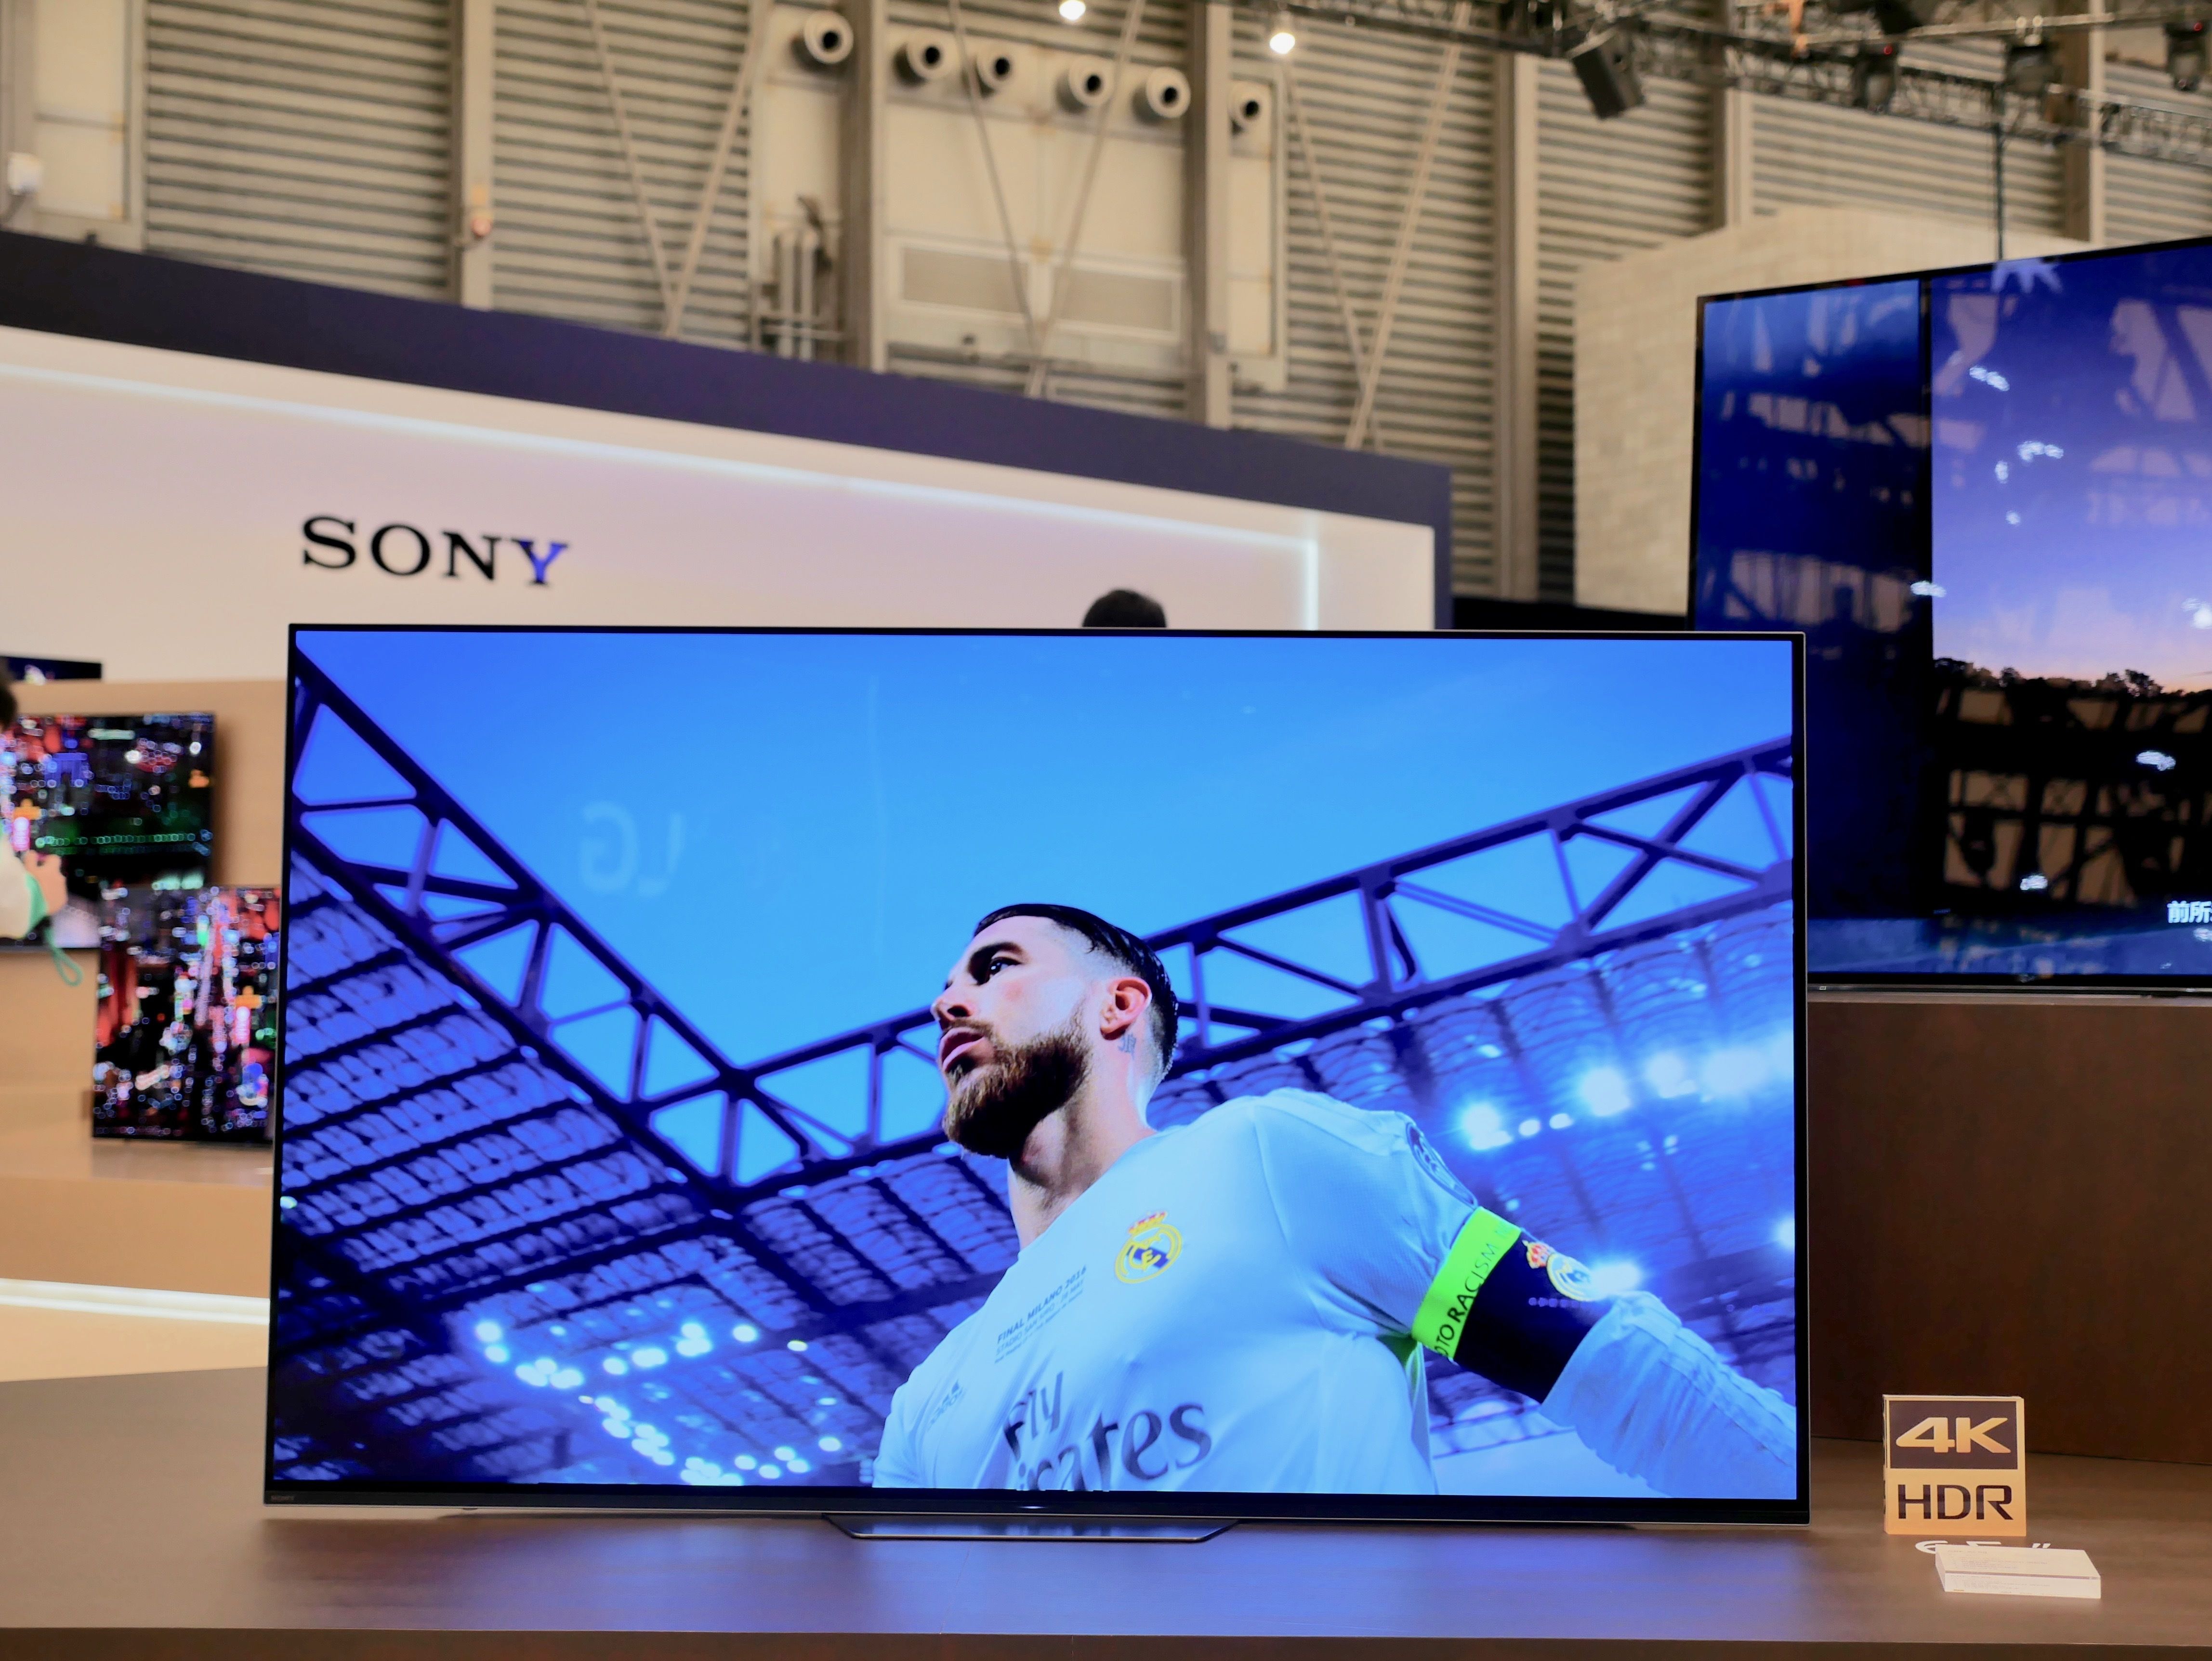 售价降低画质不变,索尼发布第二款 OLED 电视